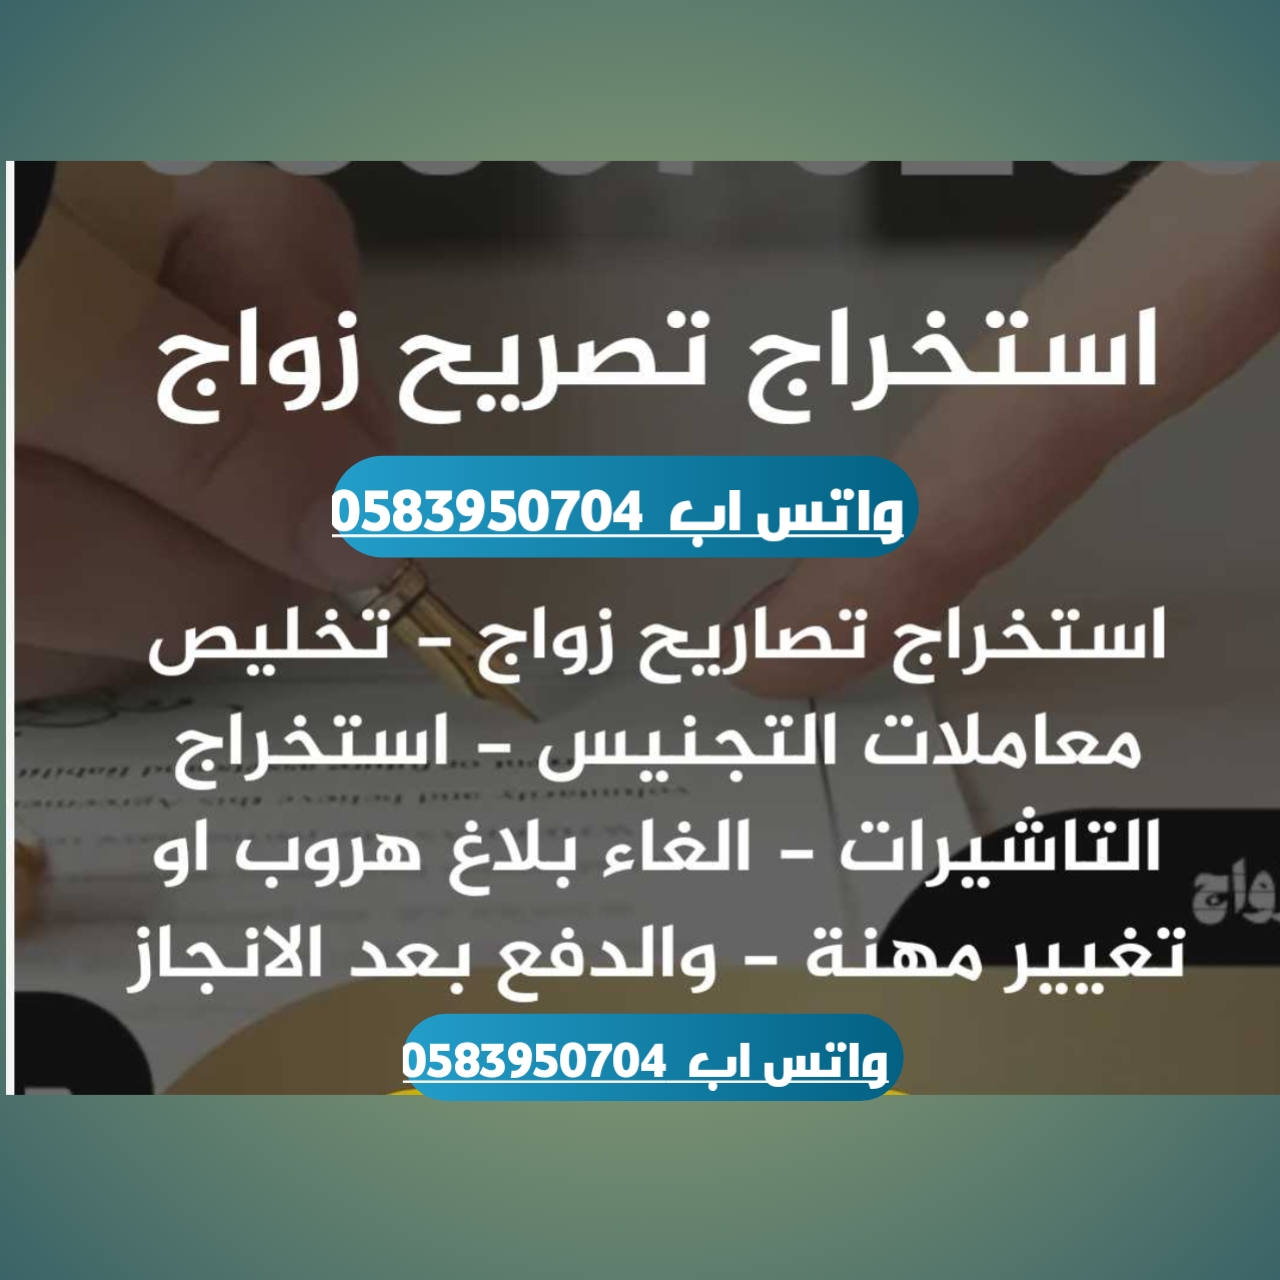 مكتب "تعقيب استخراج تصاريح الزواج" الحل الأمثل لإجراءات الزواج في السعودية